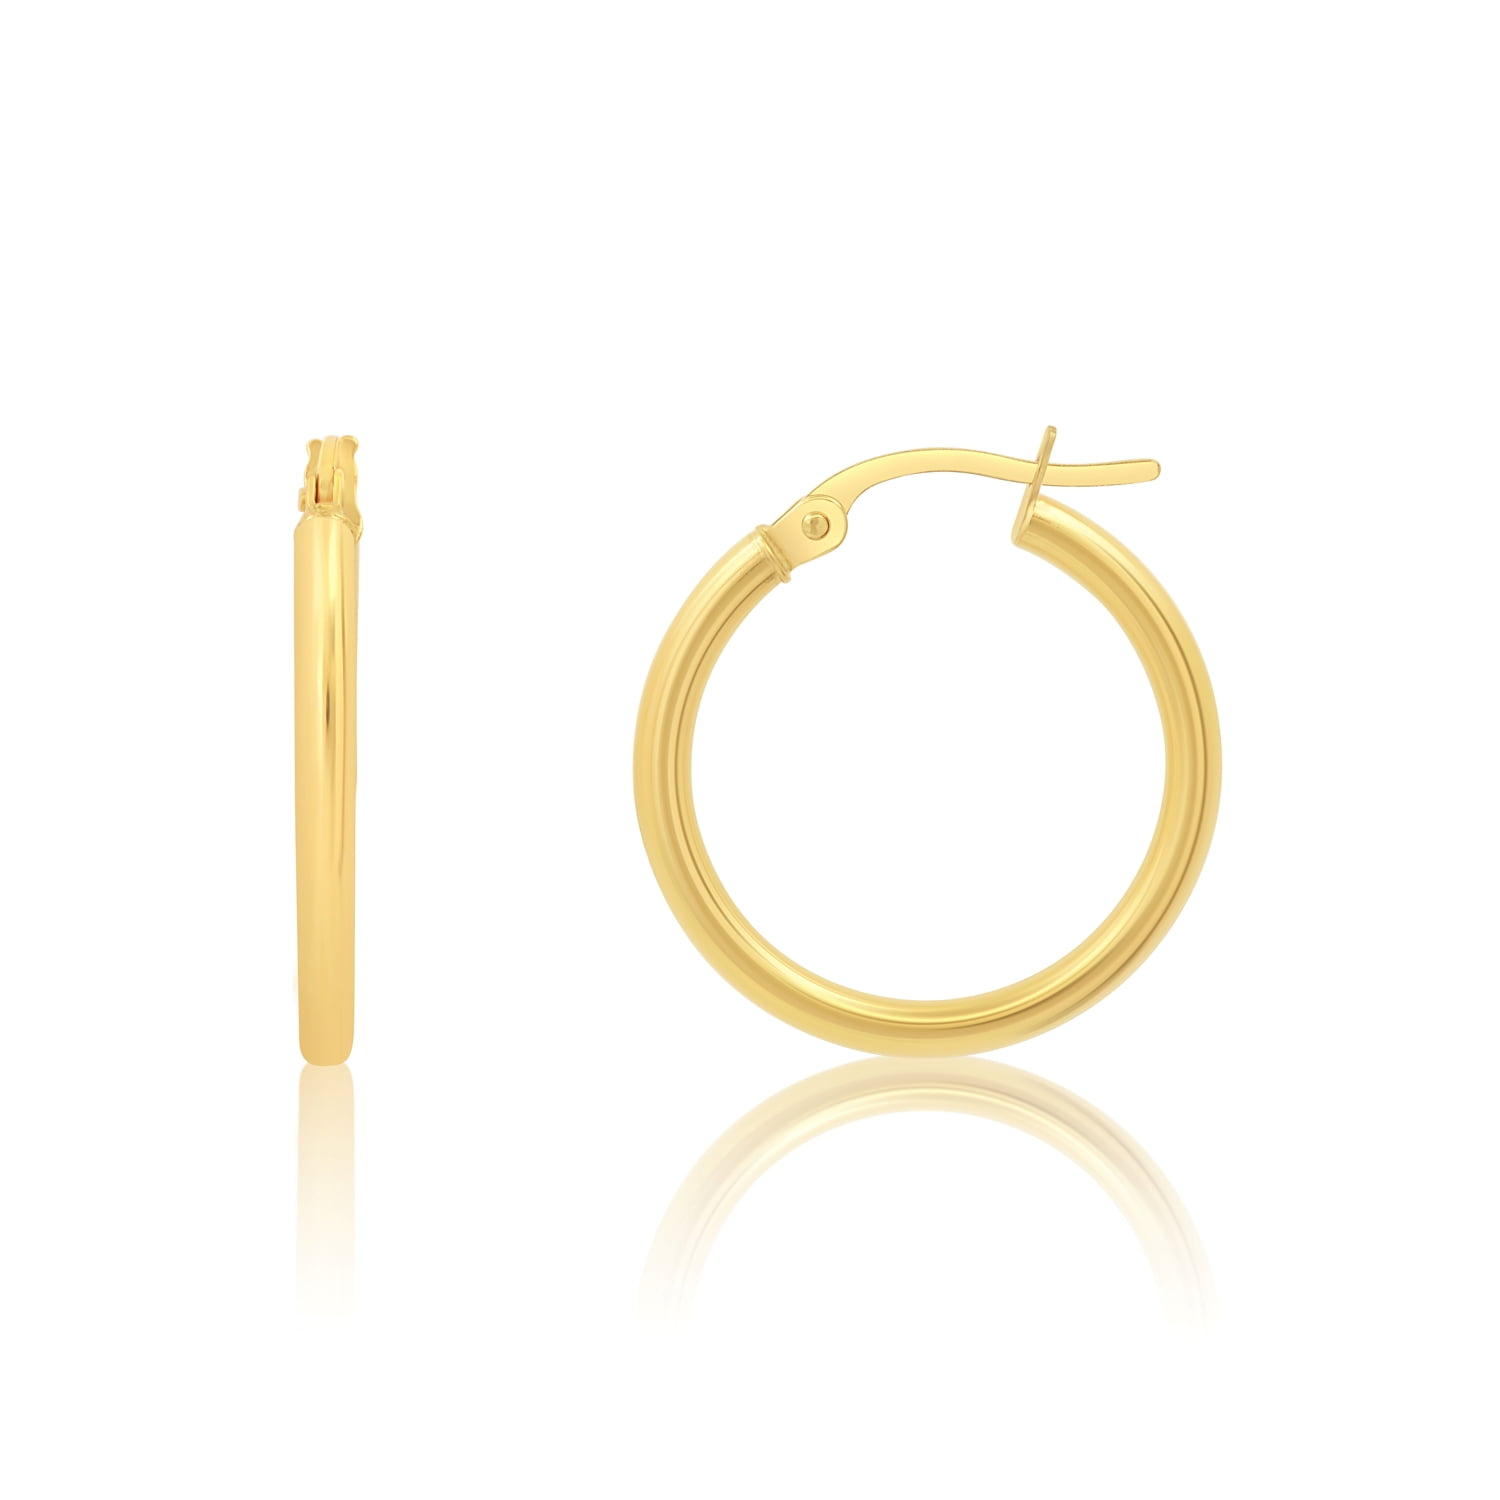 Solid 14k Gold Hoop Earrings for Women | 14k Yellow Gold Hoop Earrings ...